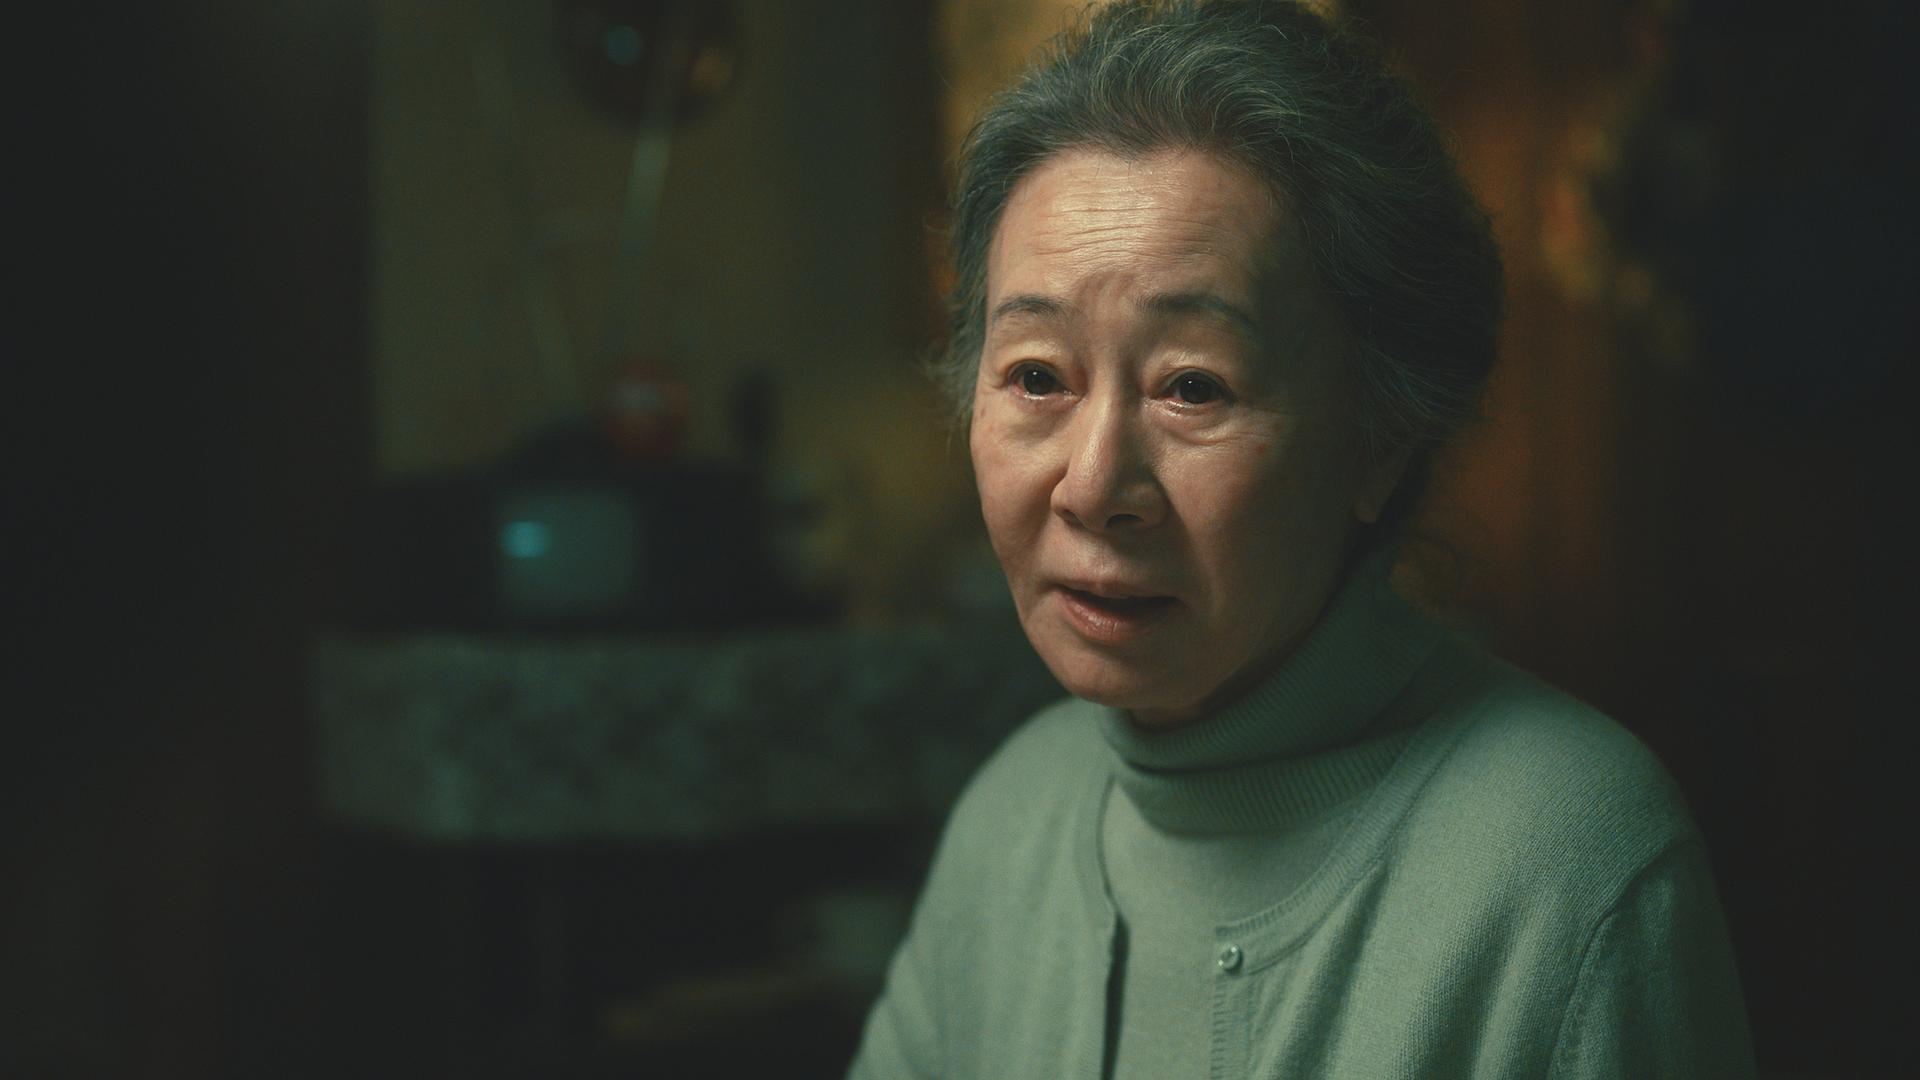 Szene aus der Serie "Pachinko". Zu sehen ist eine ältere asiatische Frau.